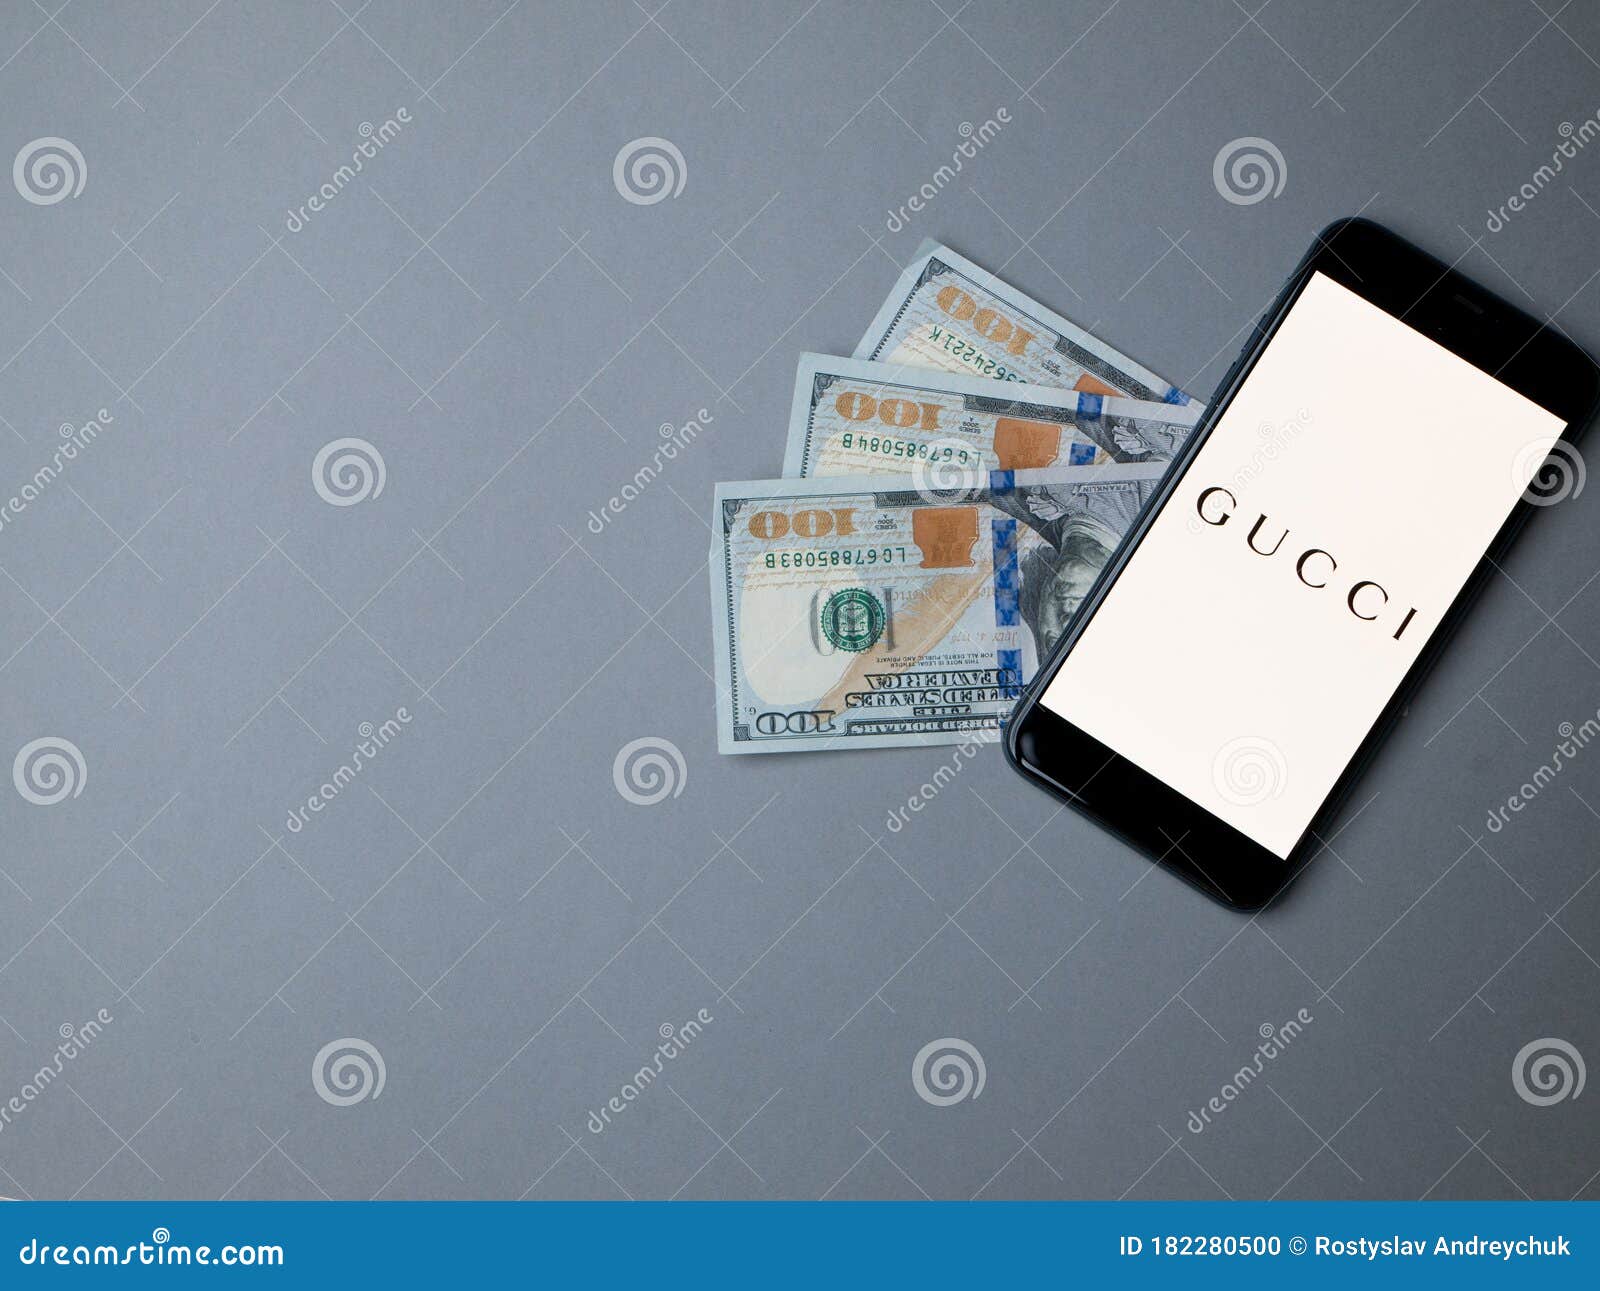 美国 年5月gucci Iphone应用屏 灰色纸背景上带美元编辑类图片 图片包括有iphone应用屏 灰色纸背景上带美元 美国